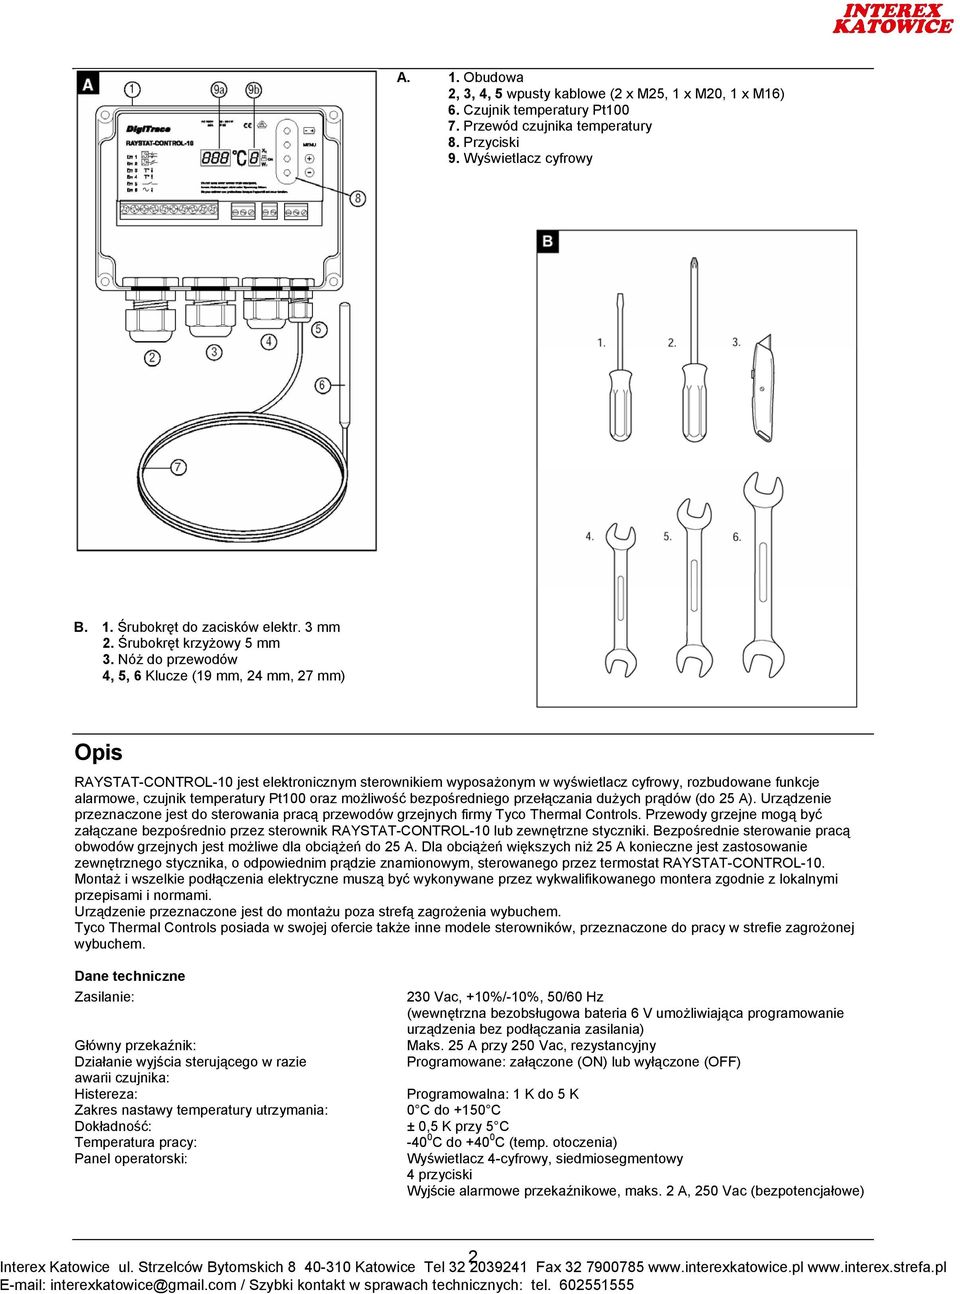 Nóż do przewodów 4, 5, 6 Klucze (19 mm, 24 mm, 27 mm) Opis RAYSTAT-CONTROL-10 jest elektronicznym sterownikiem wyposażonym w wyświetlacz cyfrowy, rozbudowane funkcje alarmowe, czujnik temperatury